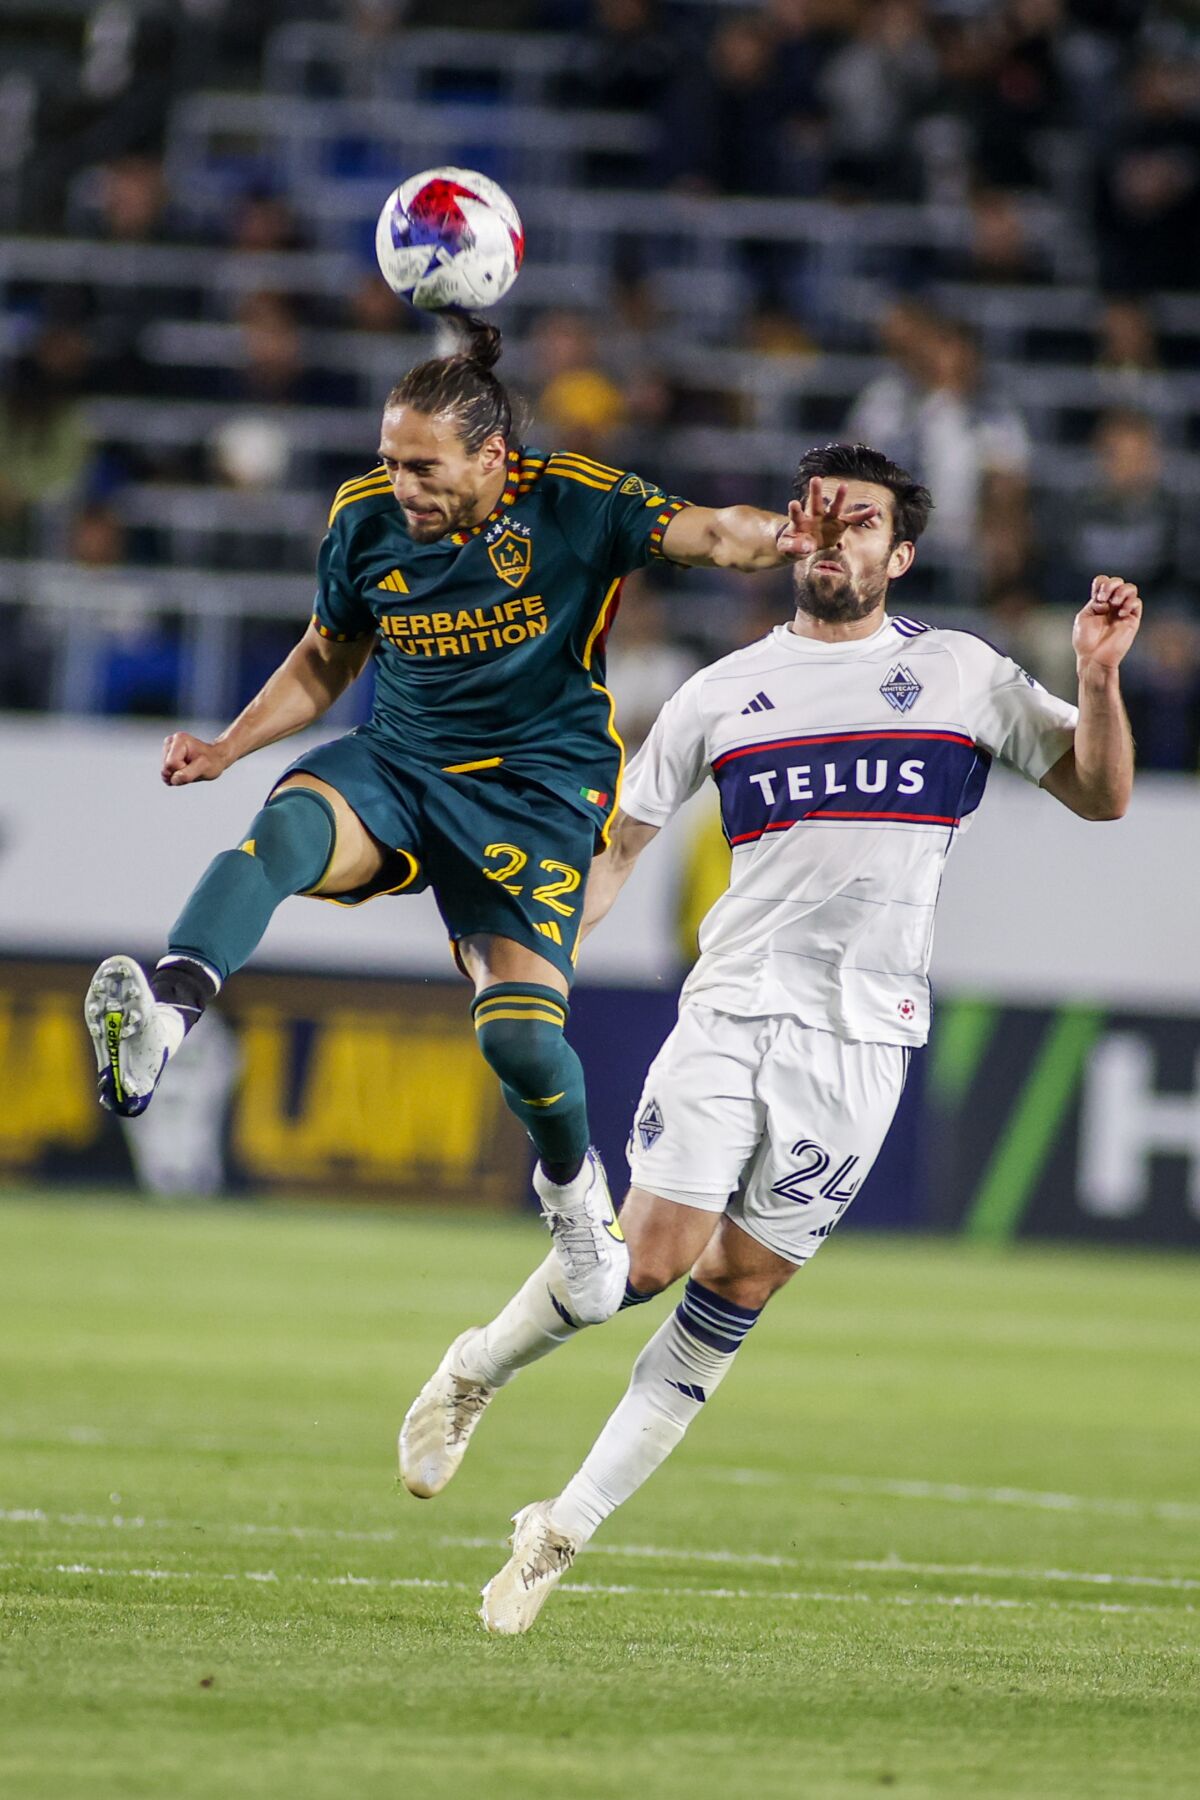 Leerdam helps Galaxy earn 1-1 draw with Whitecaps - The San Diego Union-Tribune